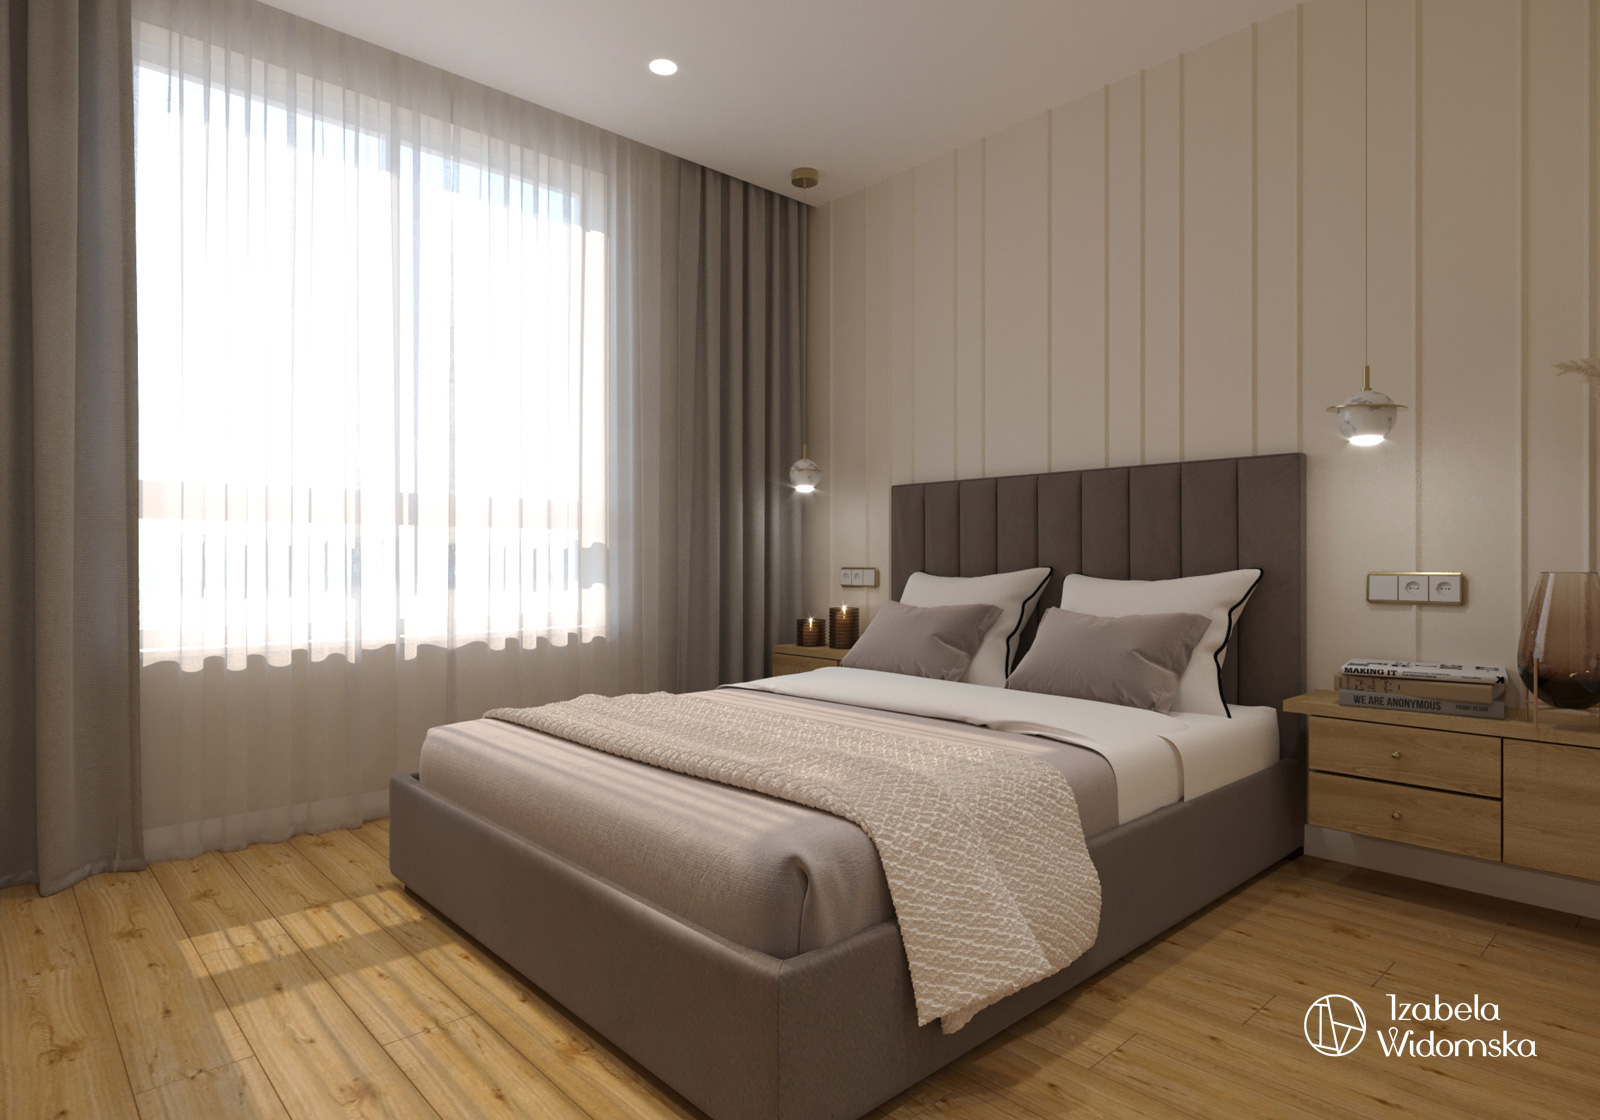 Luksusowy apartament na wynajem | Komfort Piękno Harmonia | Projekt wnętrza architekt Izabela Widomska